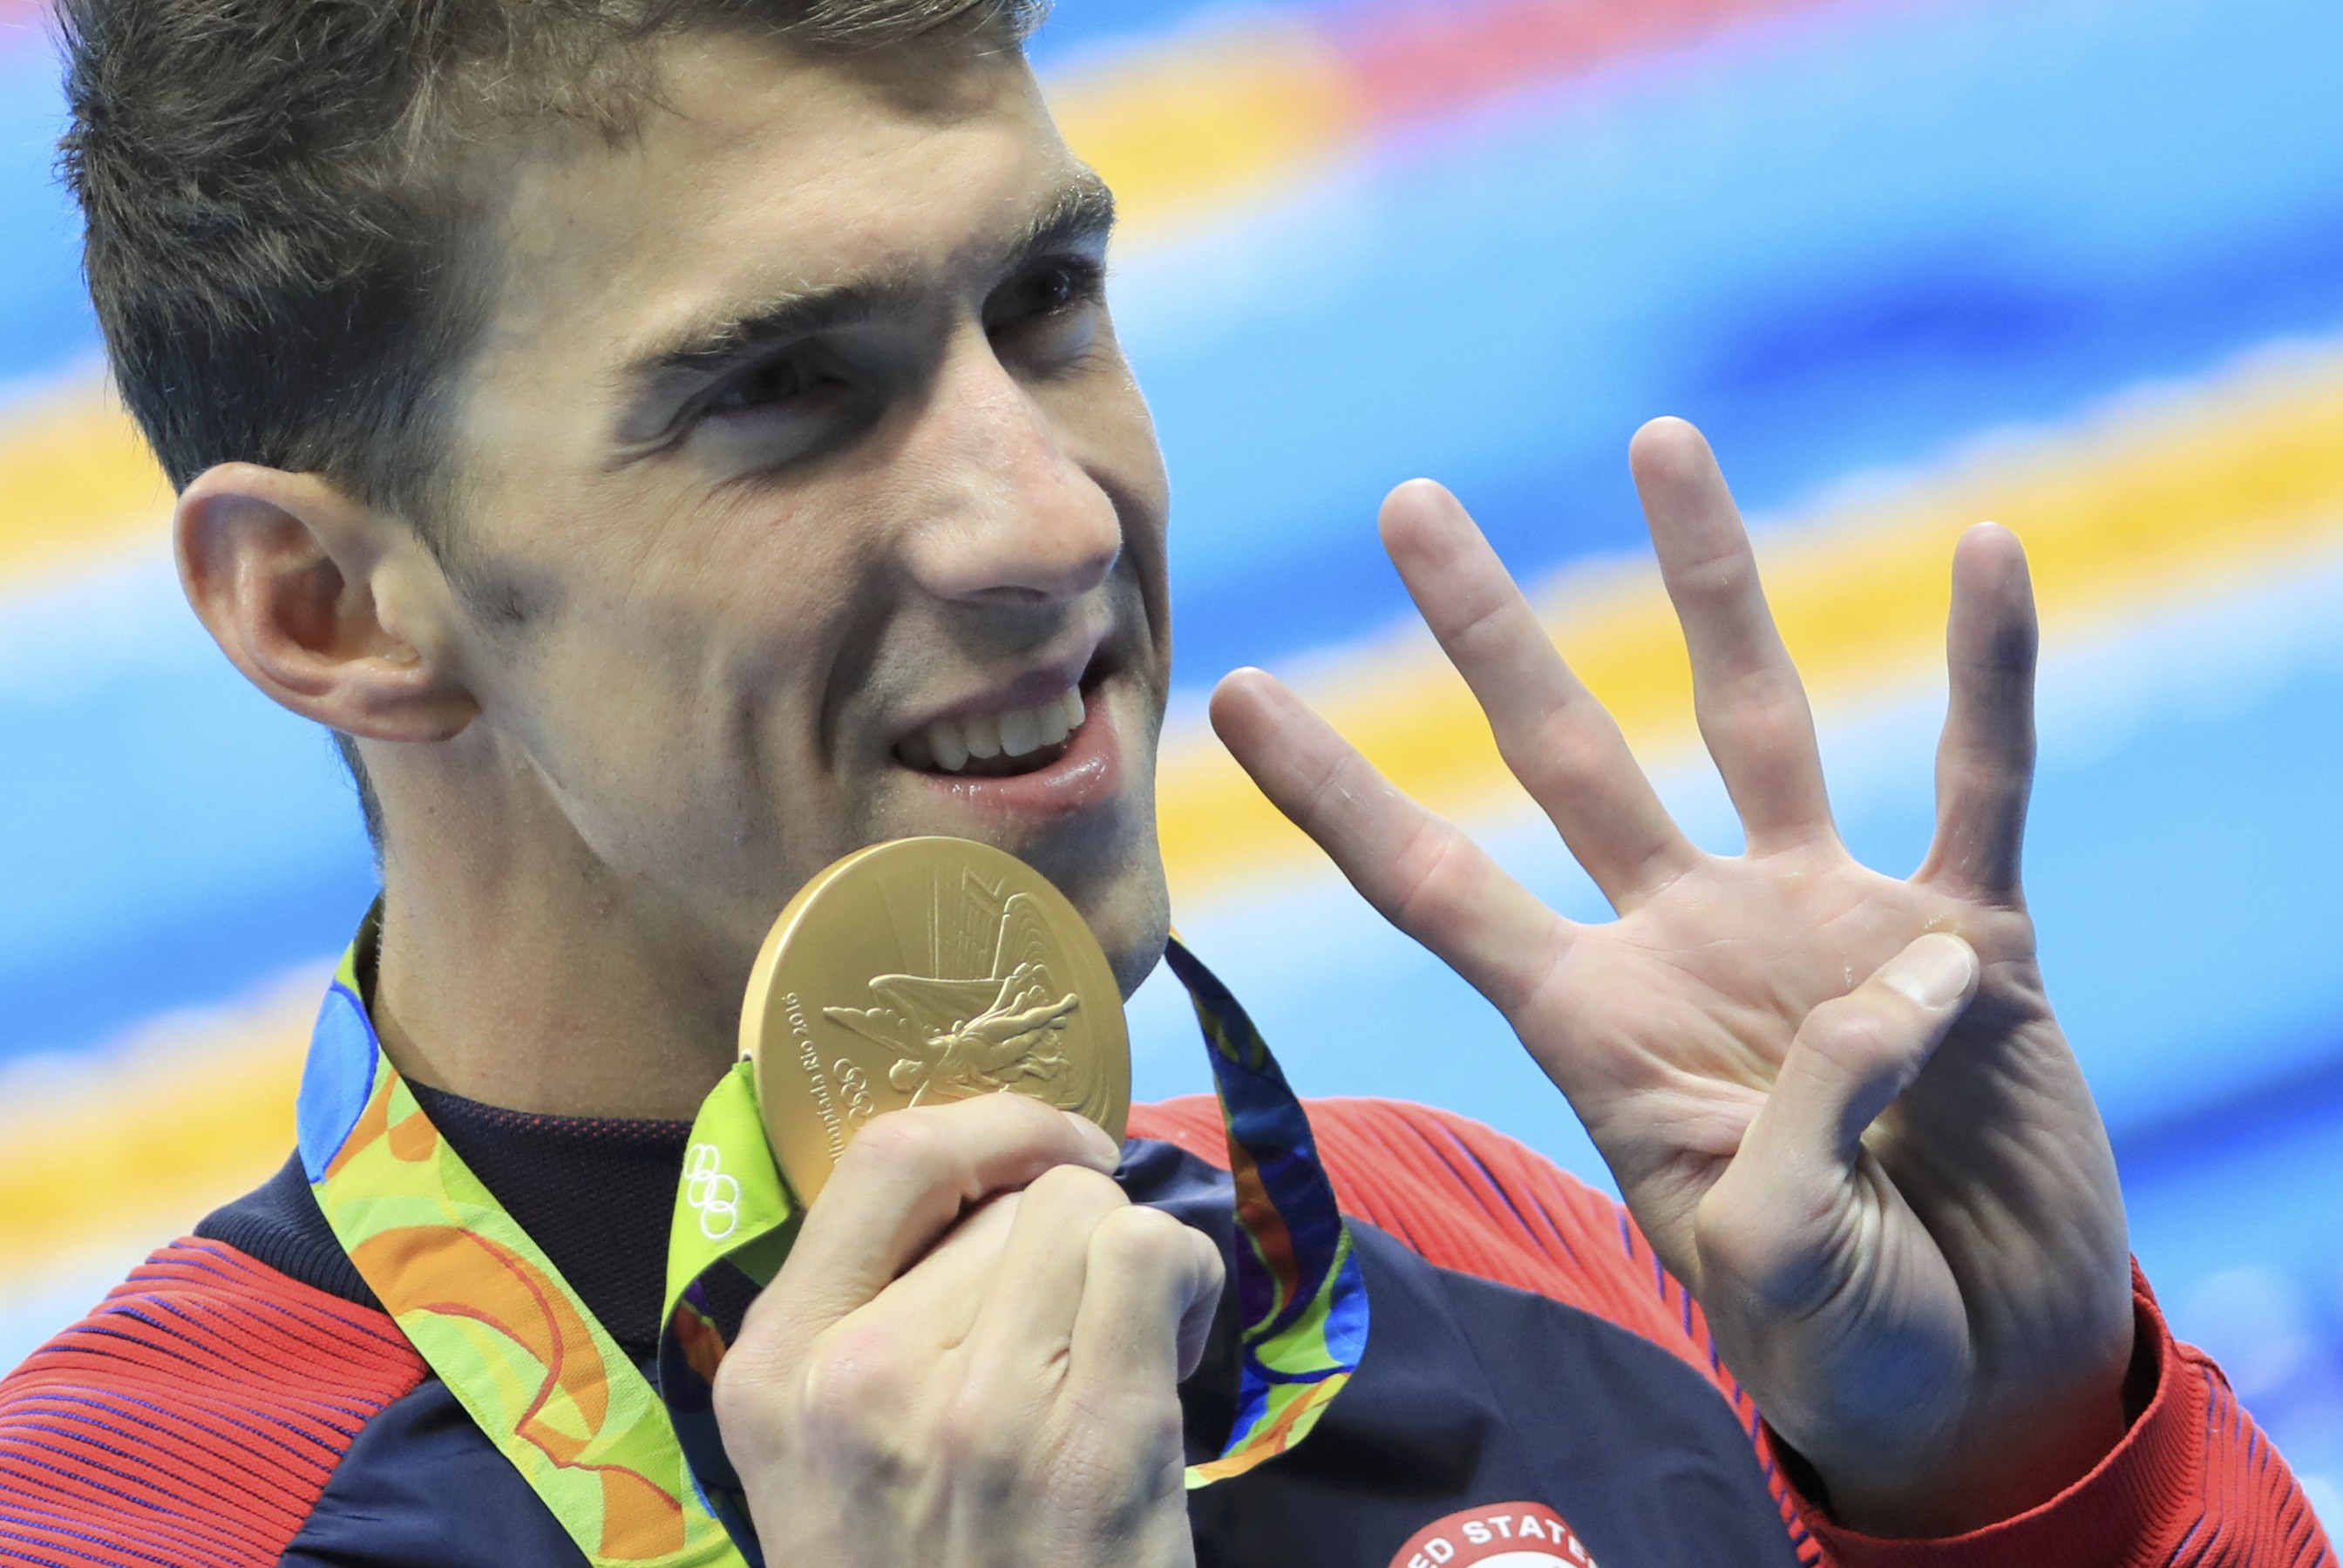 Michael Phelps continúa su senda gloriosa y llega a 22 medallas de oro